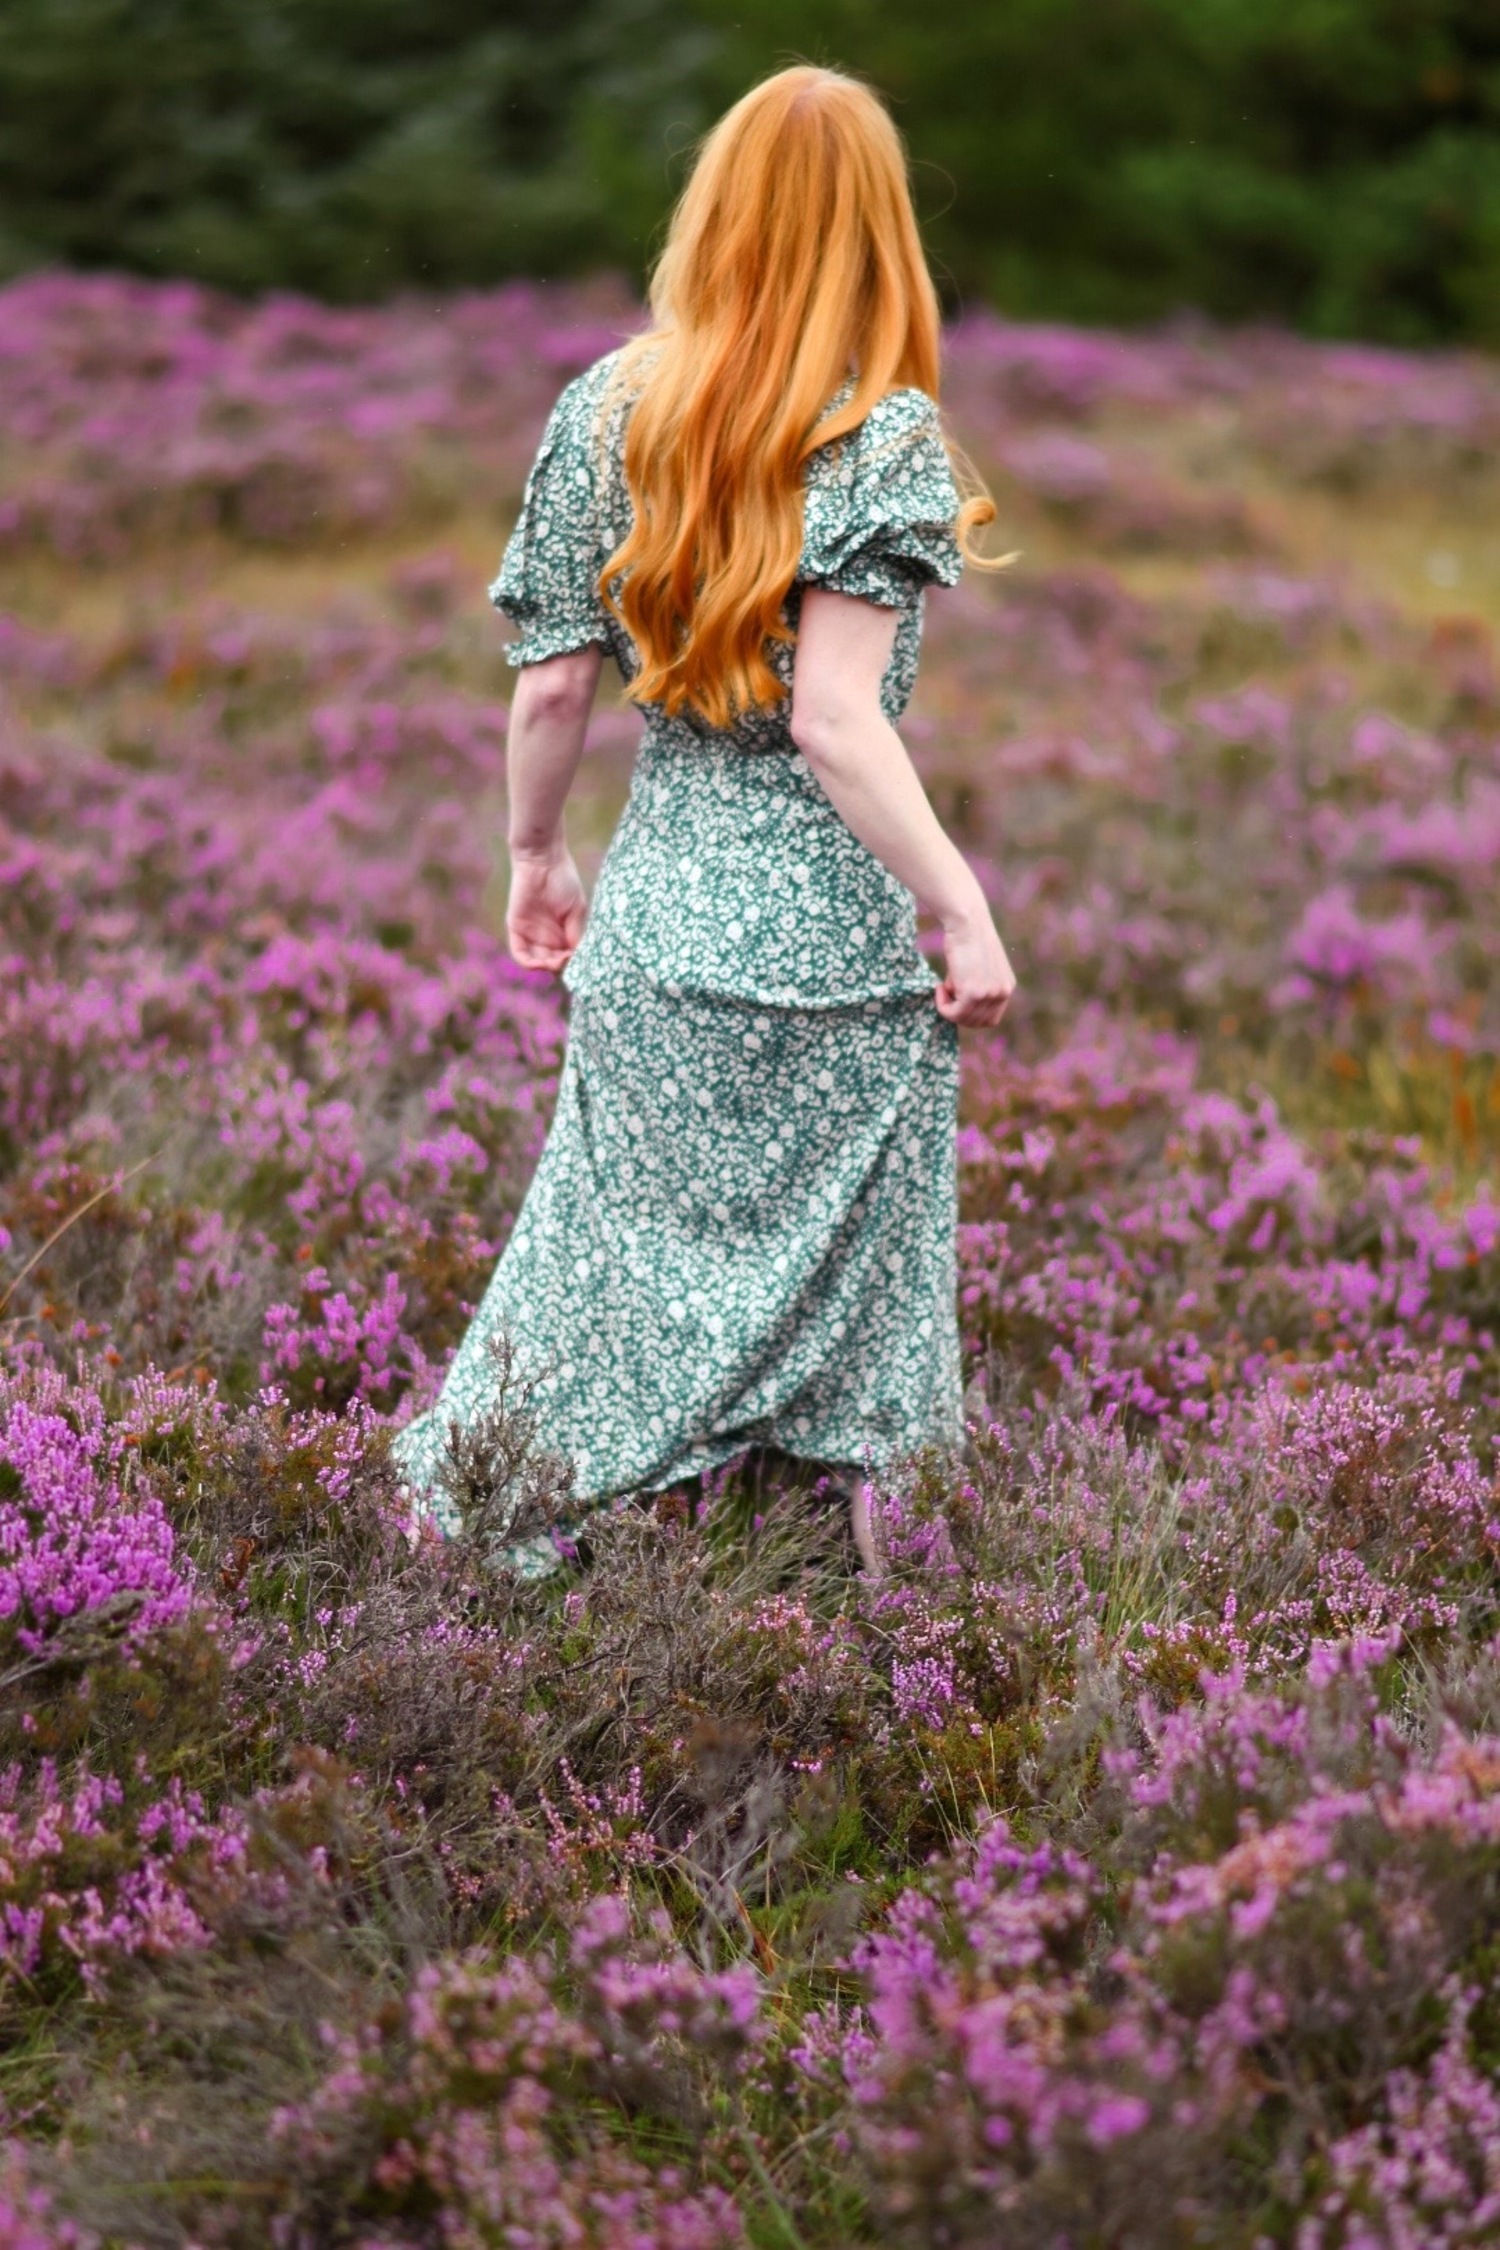 redhead wearing green floral dress in field of purple heather